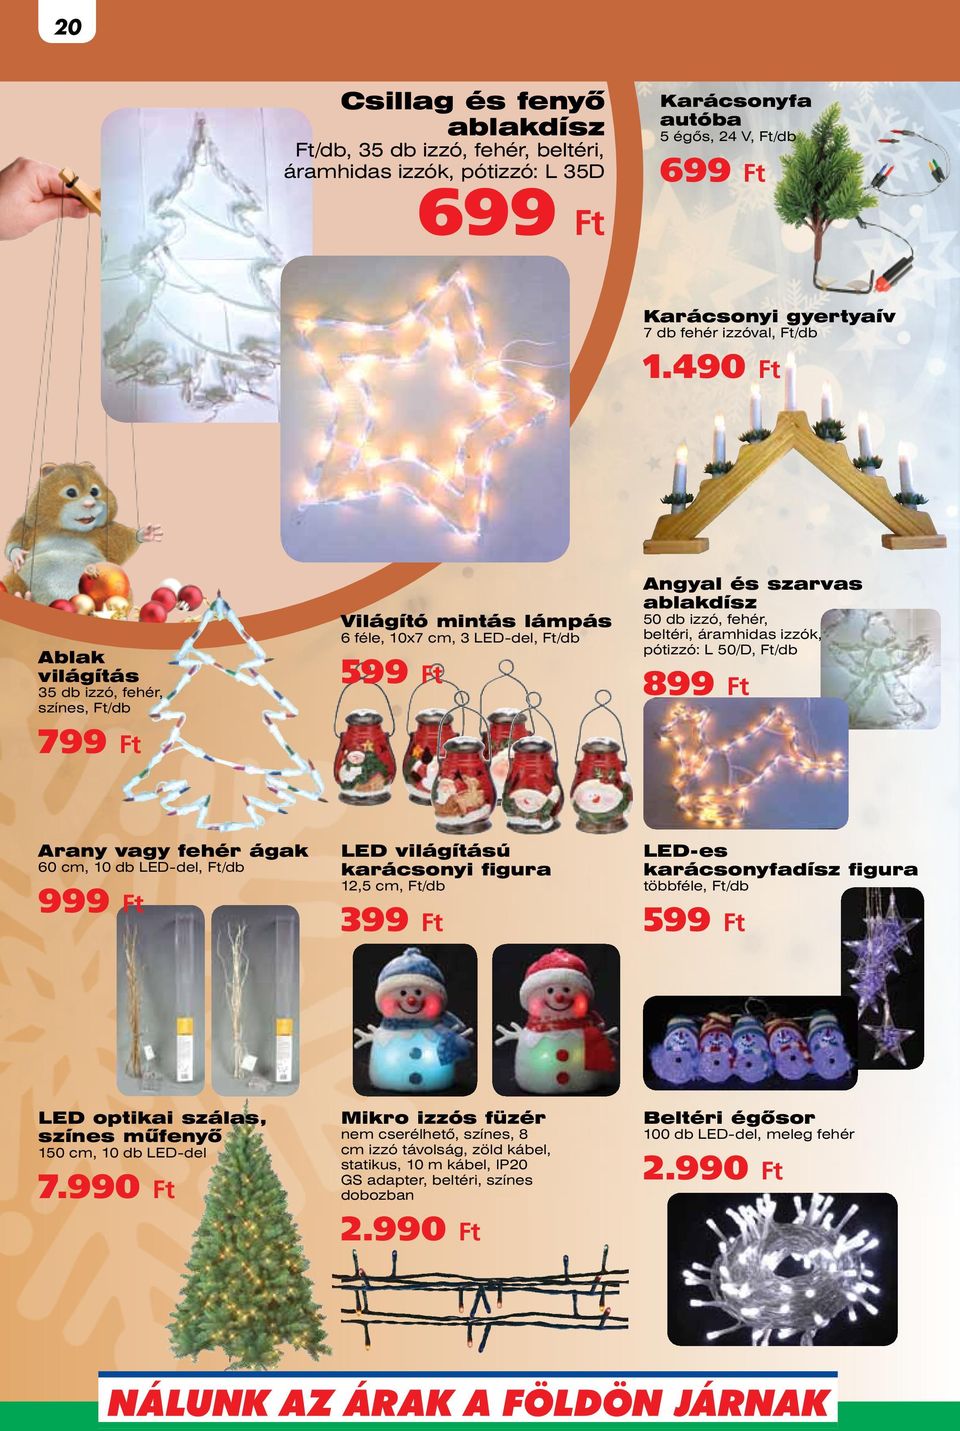 L 50/D, 899 Arany vagy fehér ágak 60 cm, 10 db LED-del, 999 LED világítású karácsonyi figura 12,5 cm, 399 LED-es karácsonyfadísz figura többféle, 599 LED optikai szálas, színes műfenyő 150